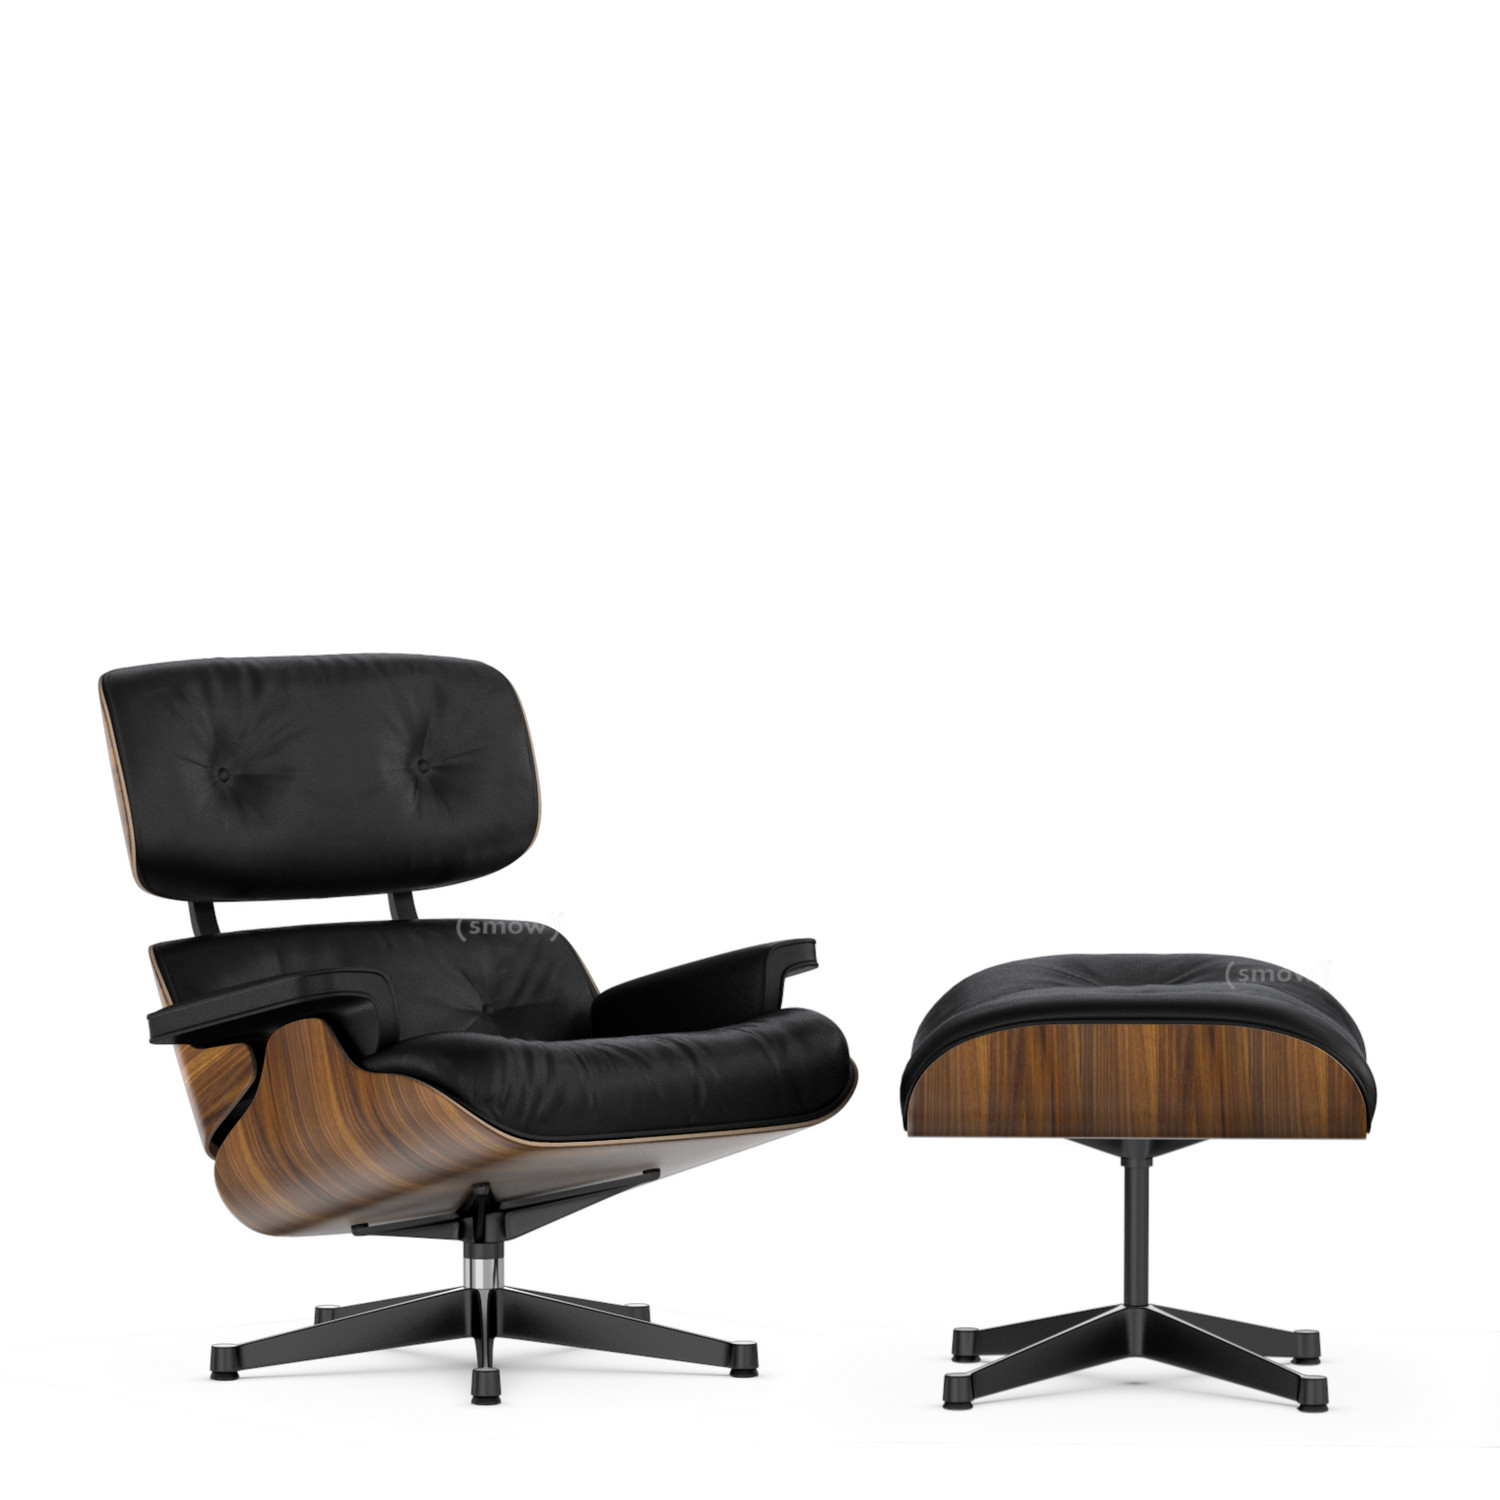 Lounge Chair & Ottoman von Charles & 1956 - Designermöbel von smow.de